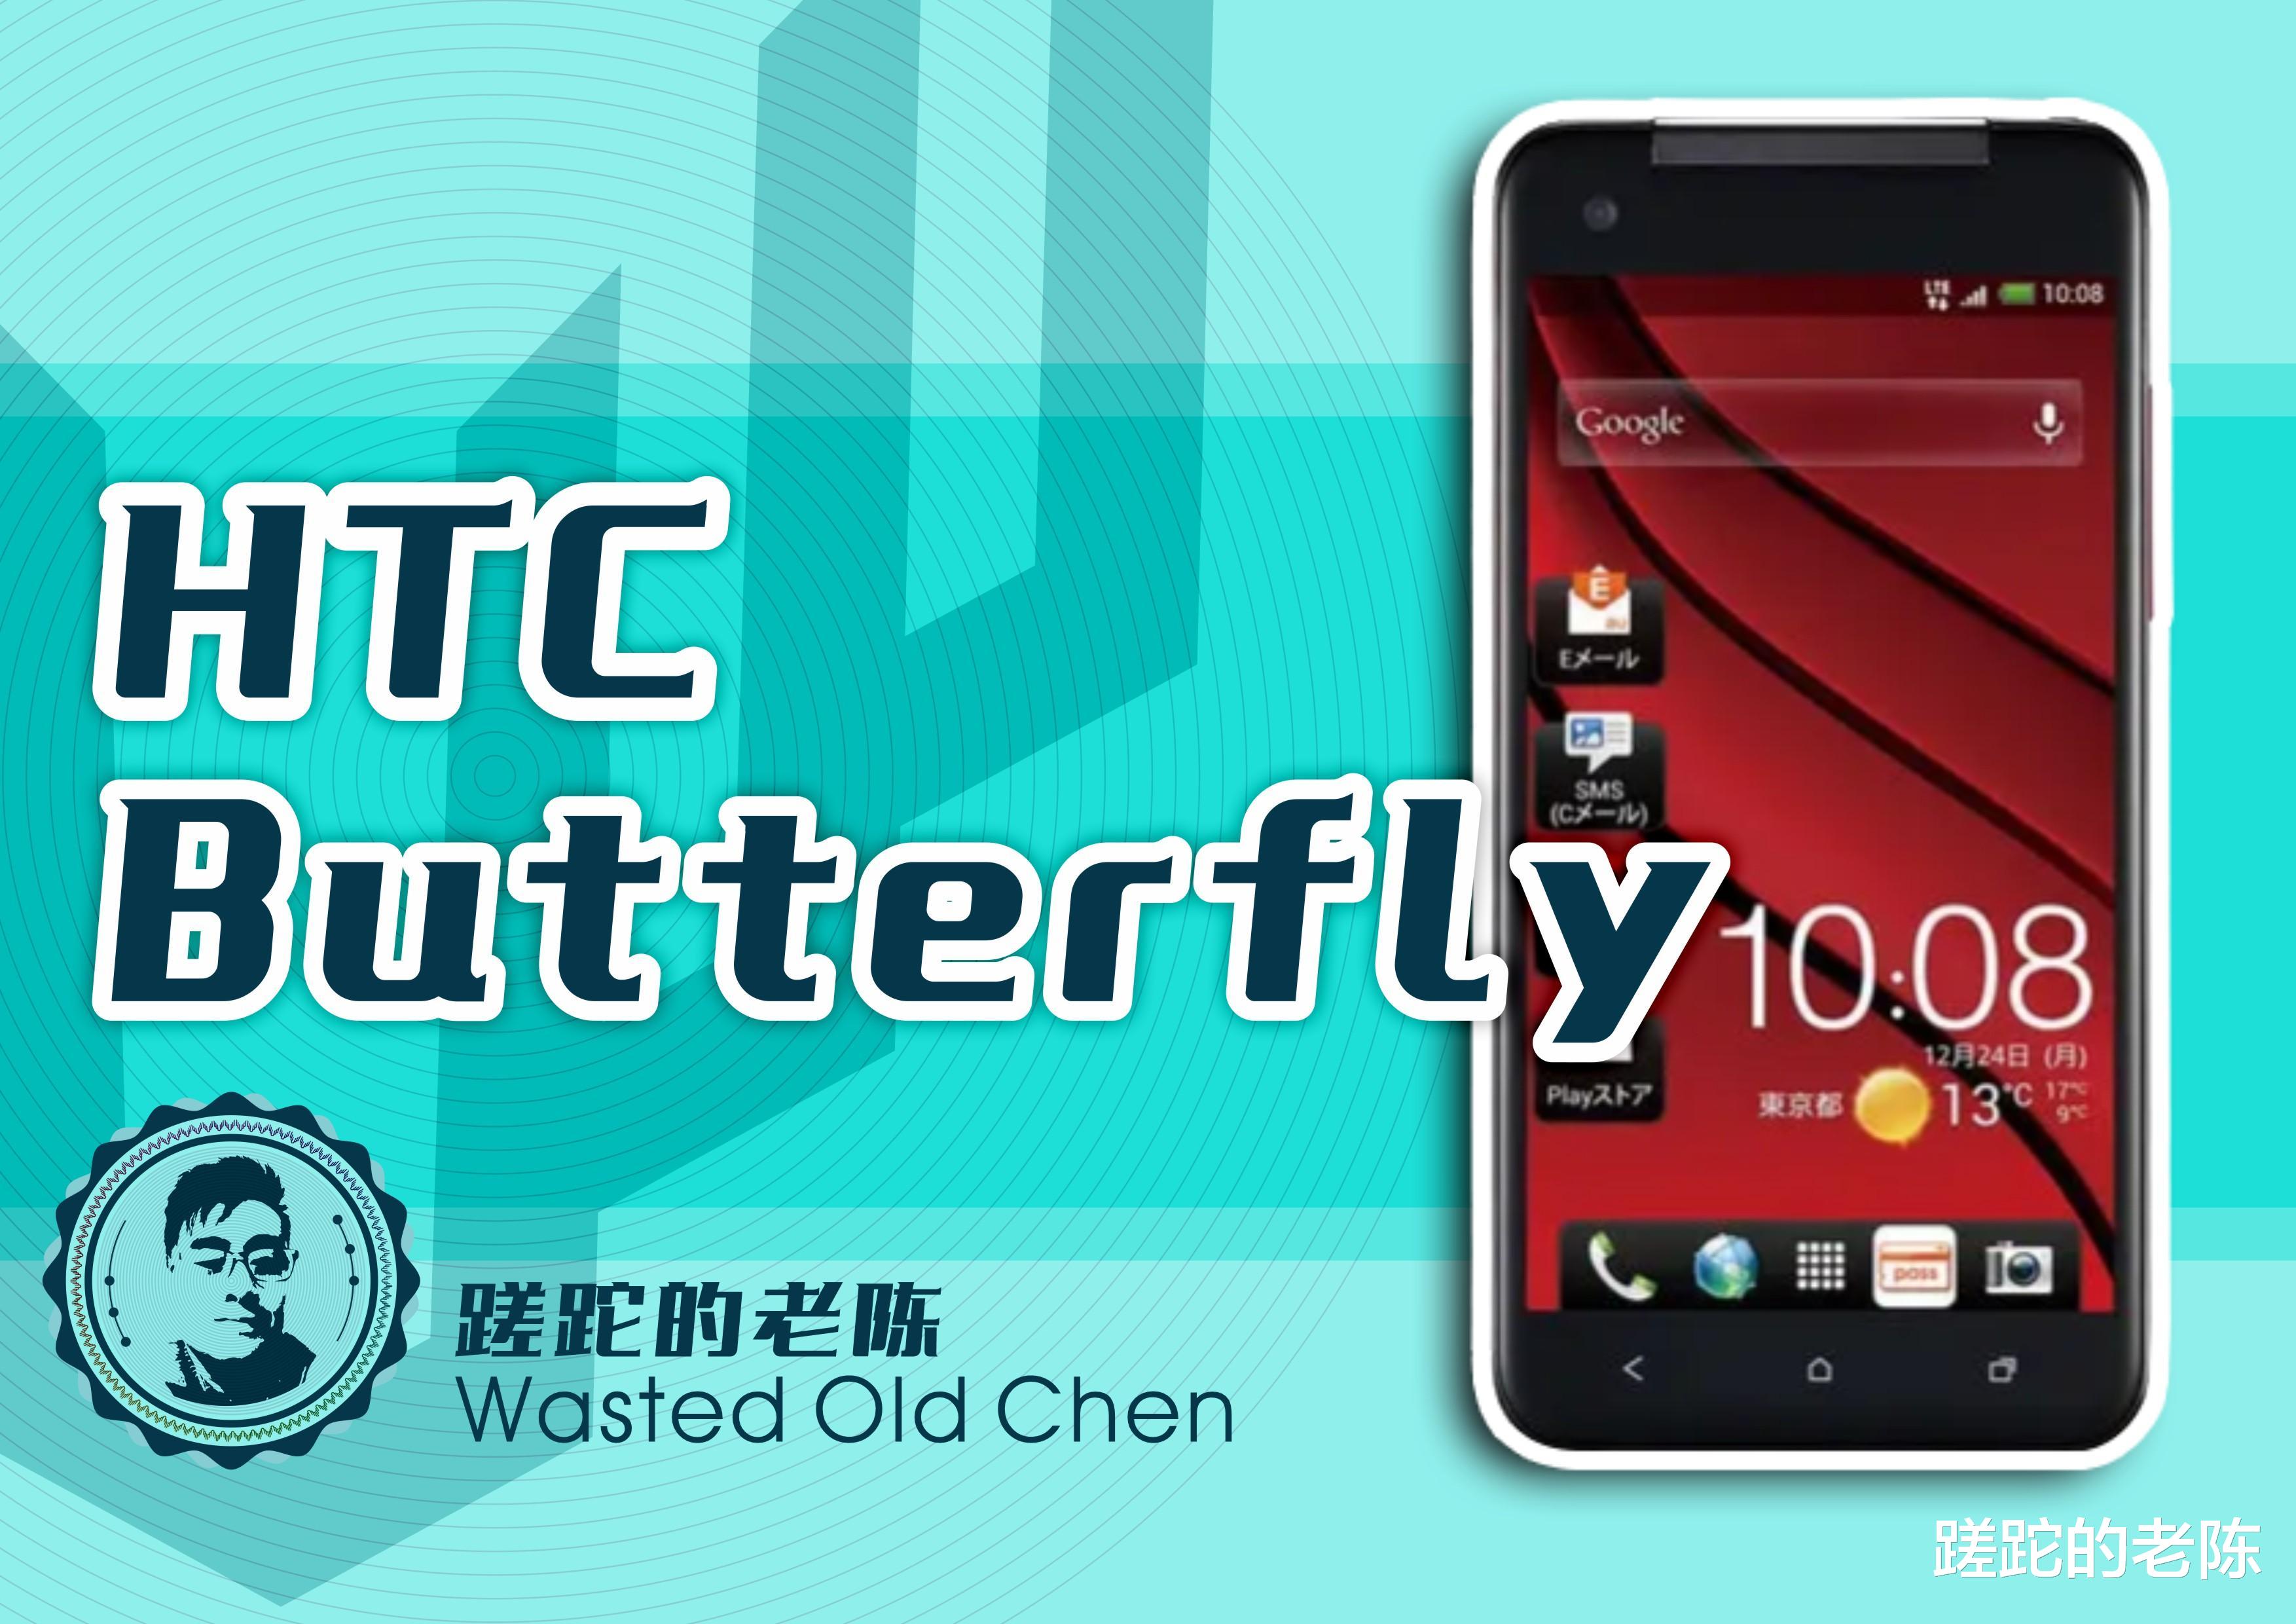 c语言|非一般的“蝴蝶”——HTC Butterfly系手机